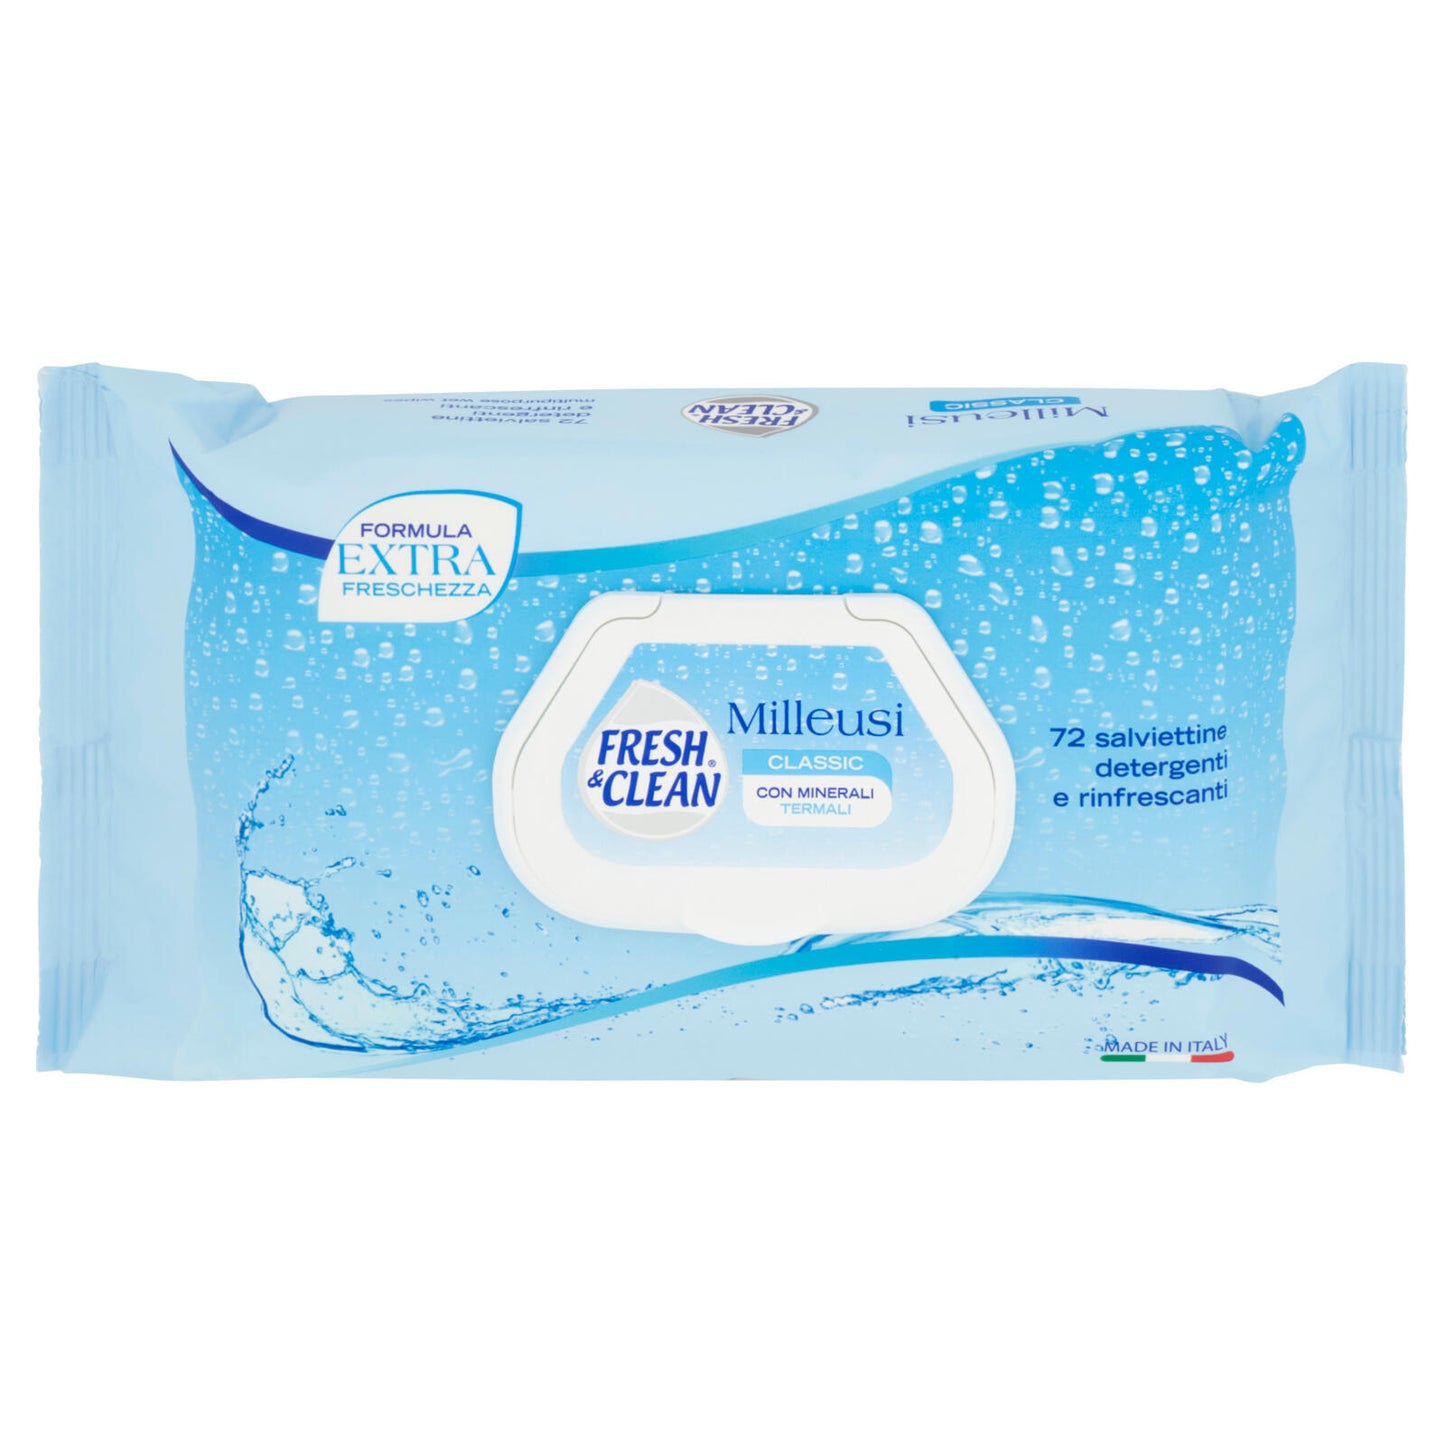 Fresh & Clean Milleusi Classic salviettine detergenti e rinfrescanti 72 pz